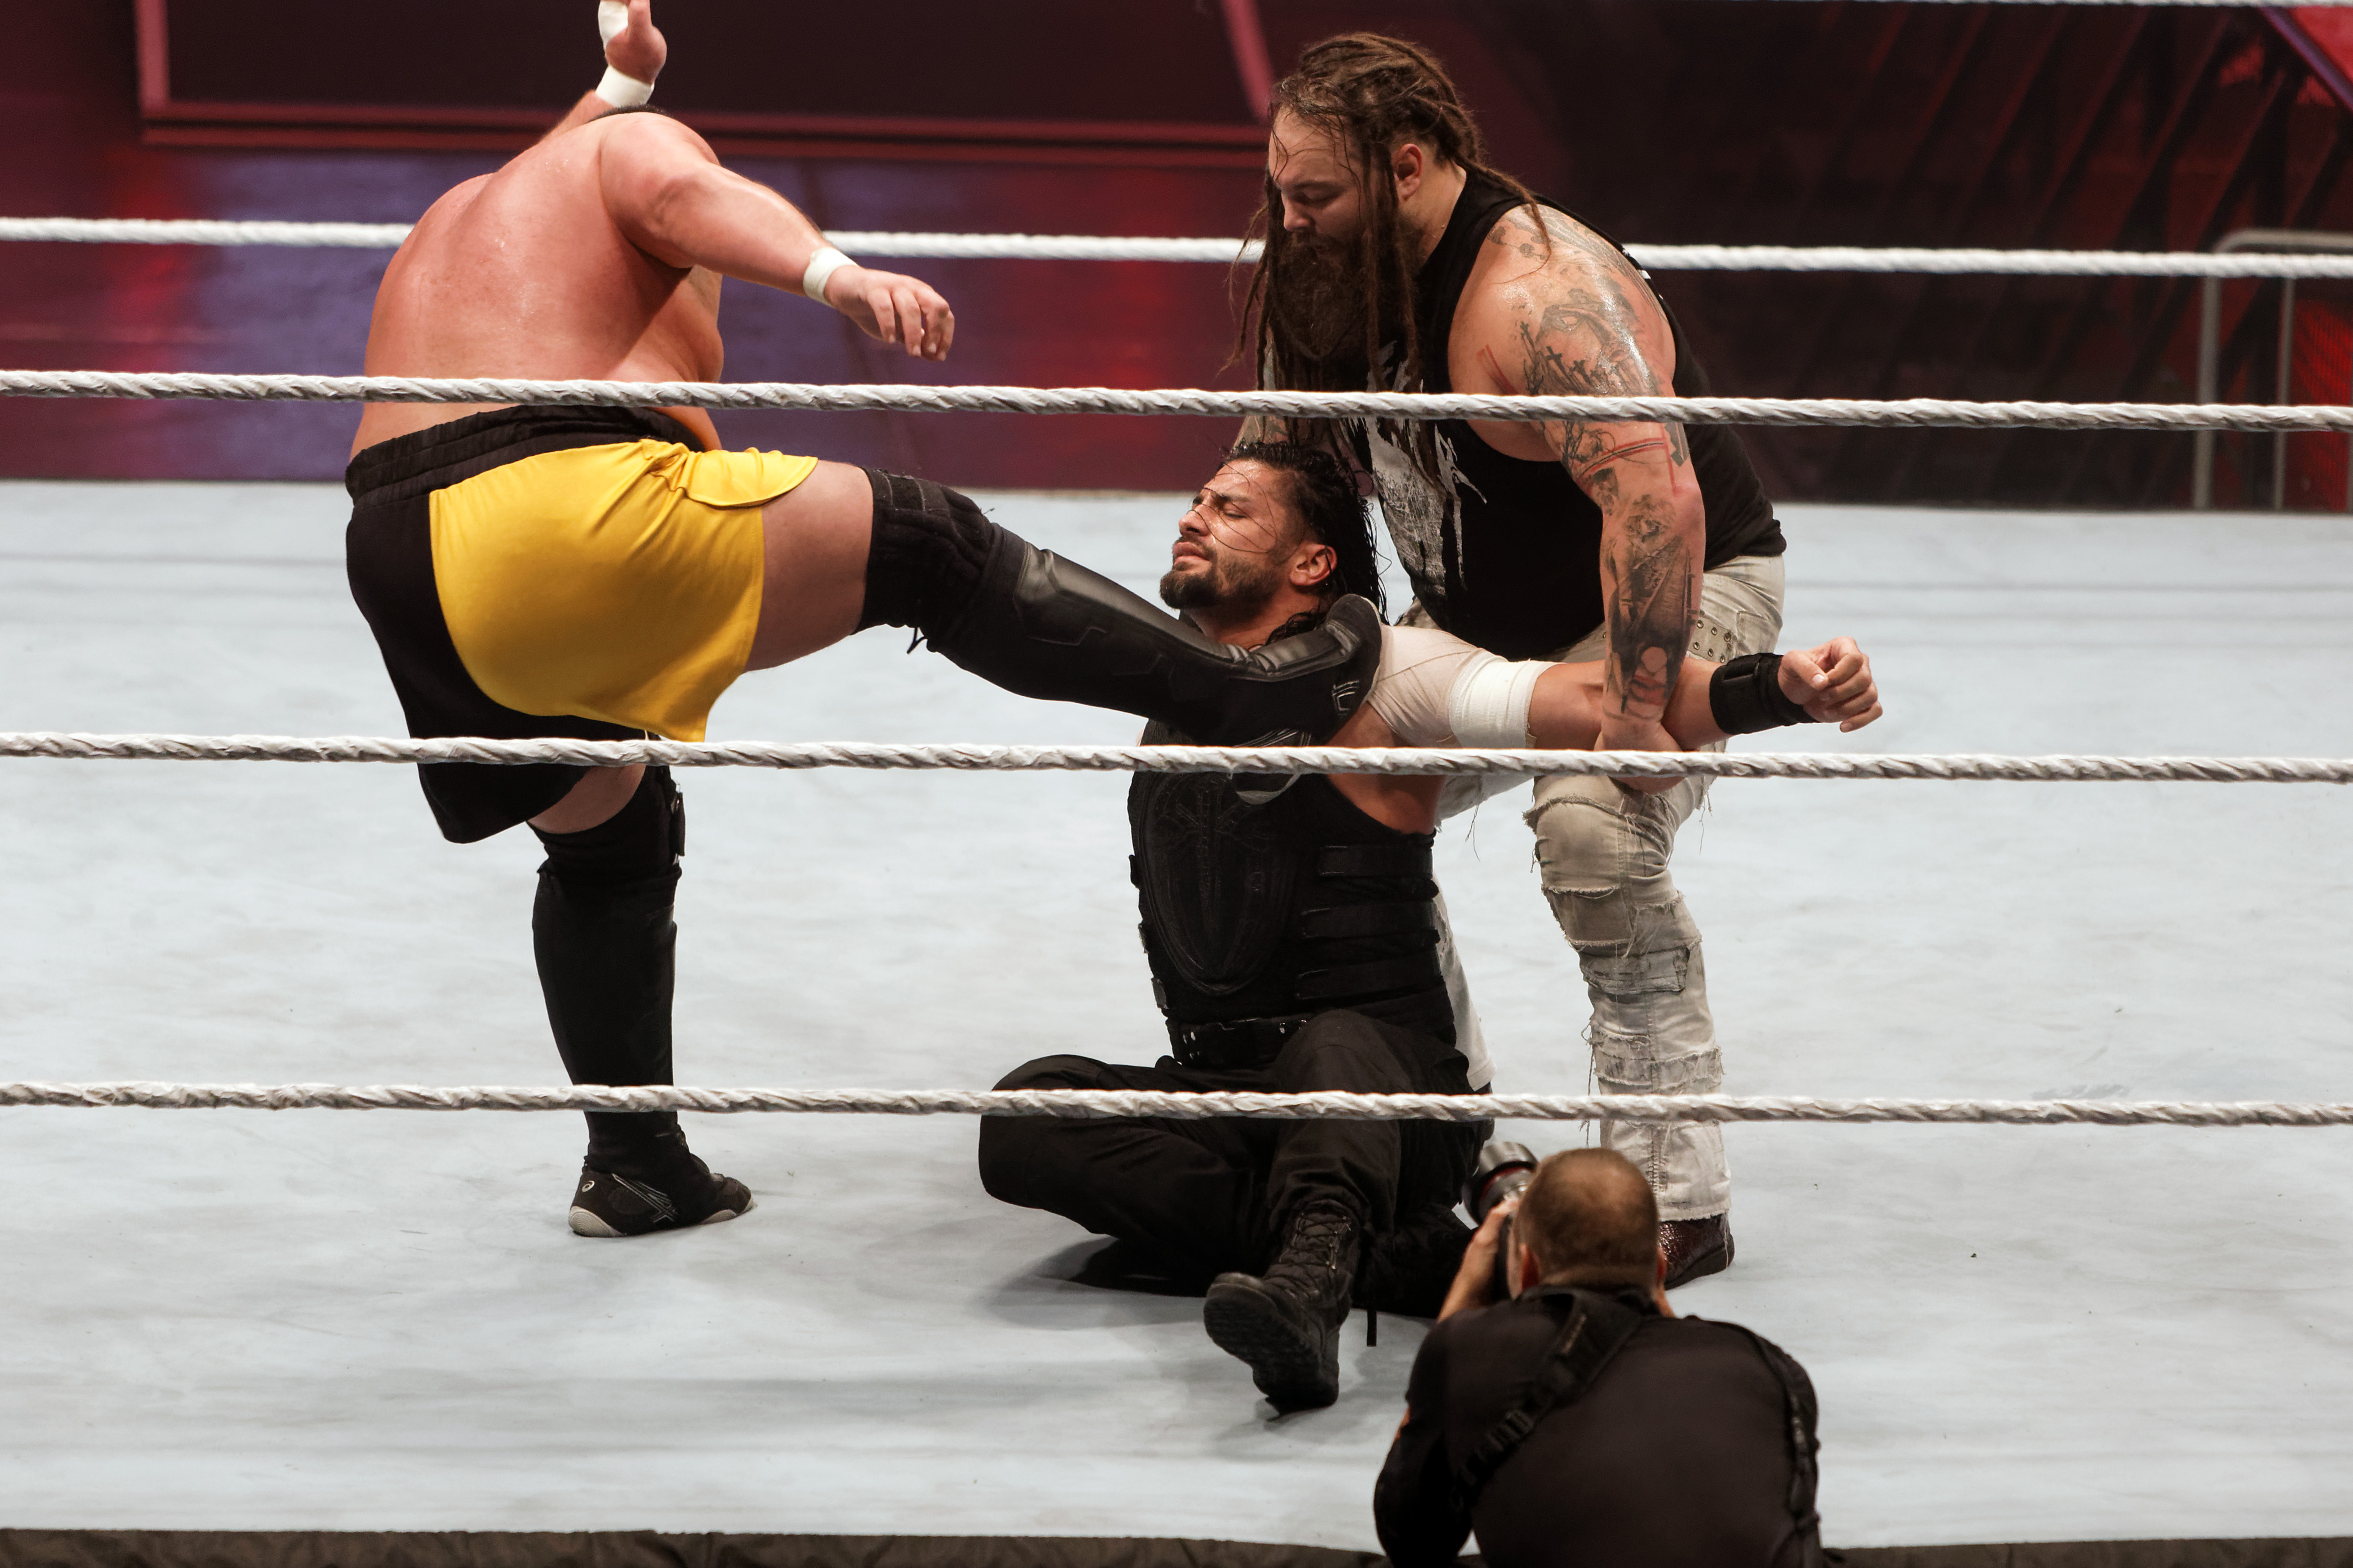 Wyatt/Joe v Reigns/Rollins